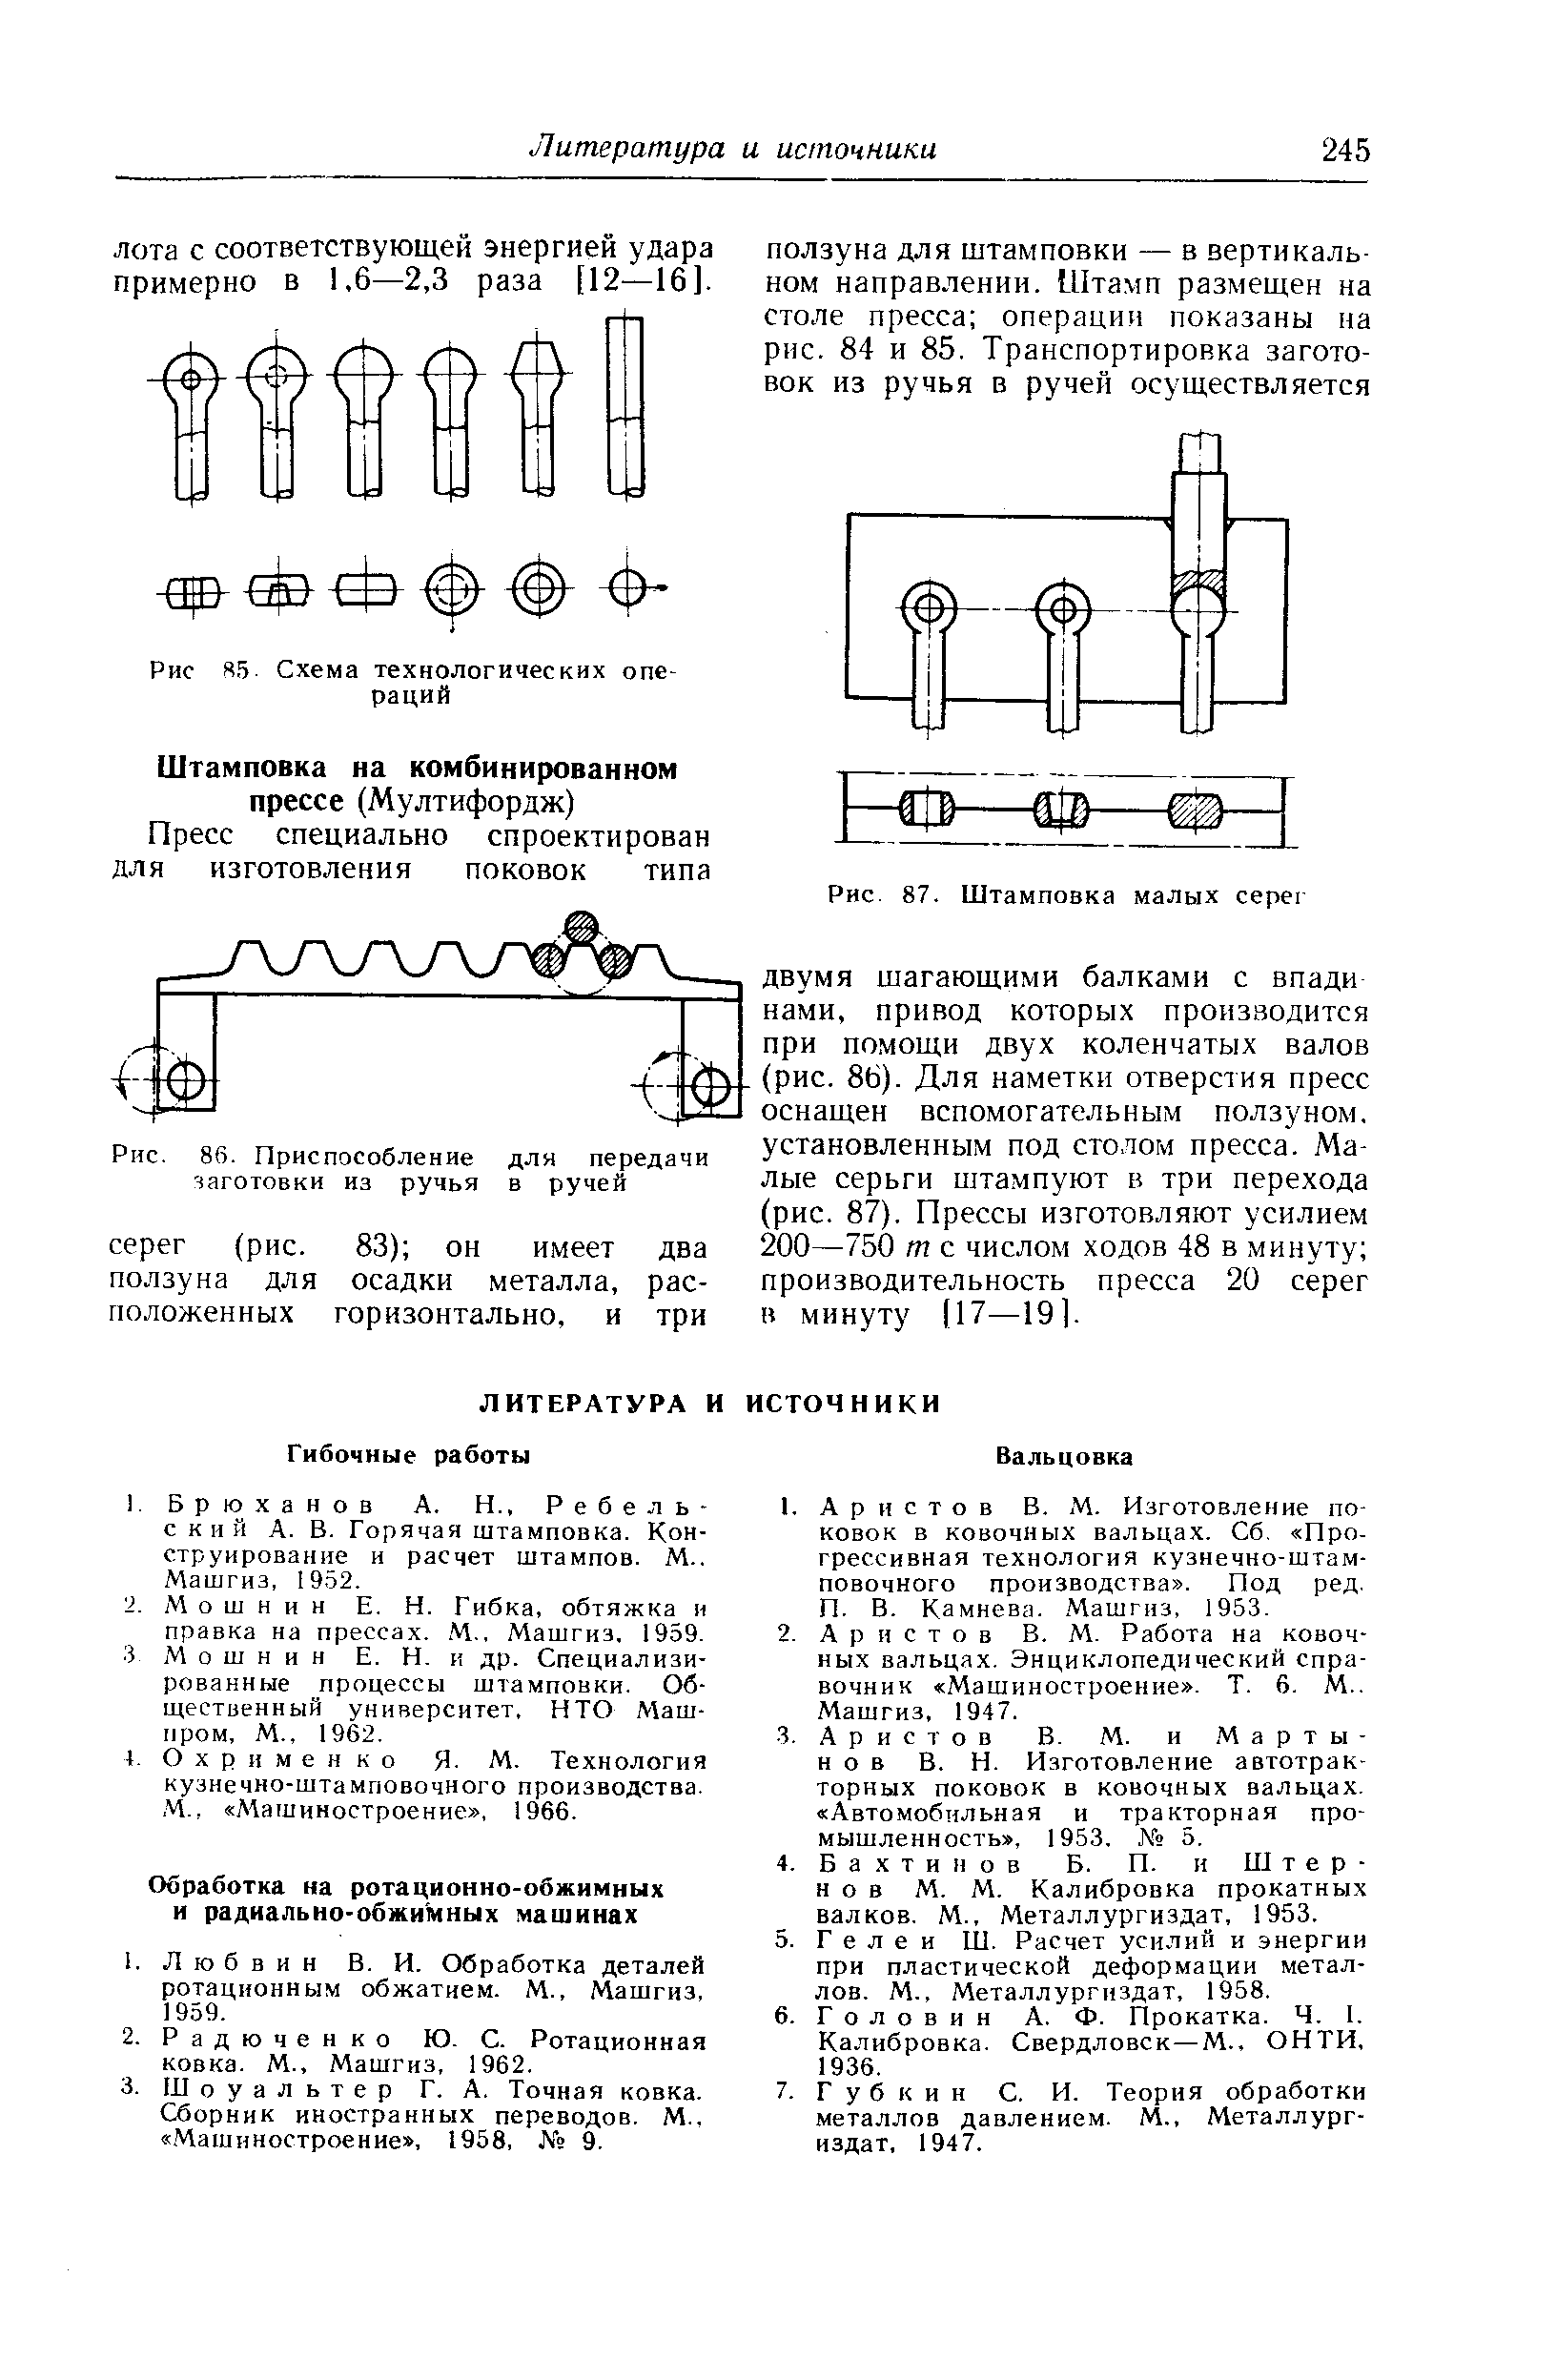 О X р и м е н к о Я- М. Технология кузнечно-штамповочного производства. М., Машиностроение , 1966.
